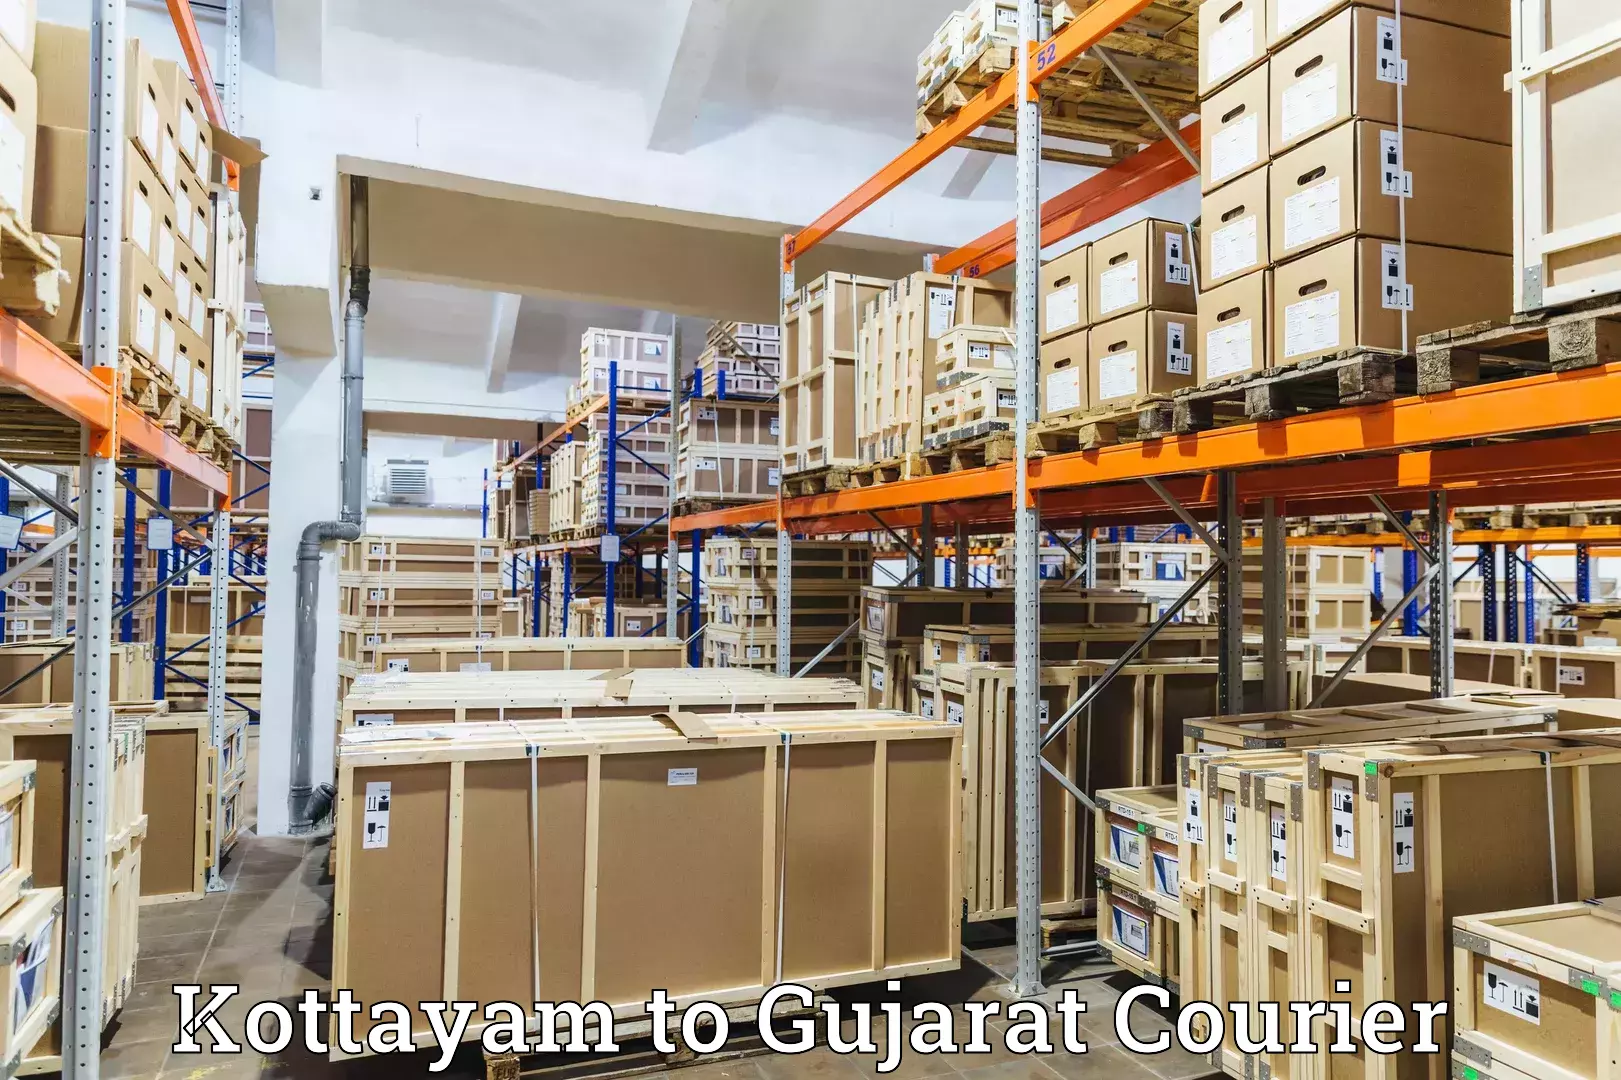 Courier service comparison Kottayam to Dabhoi